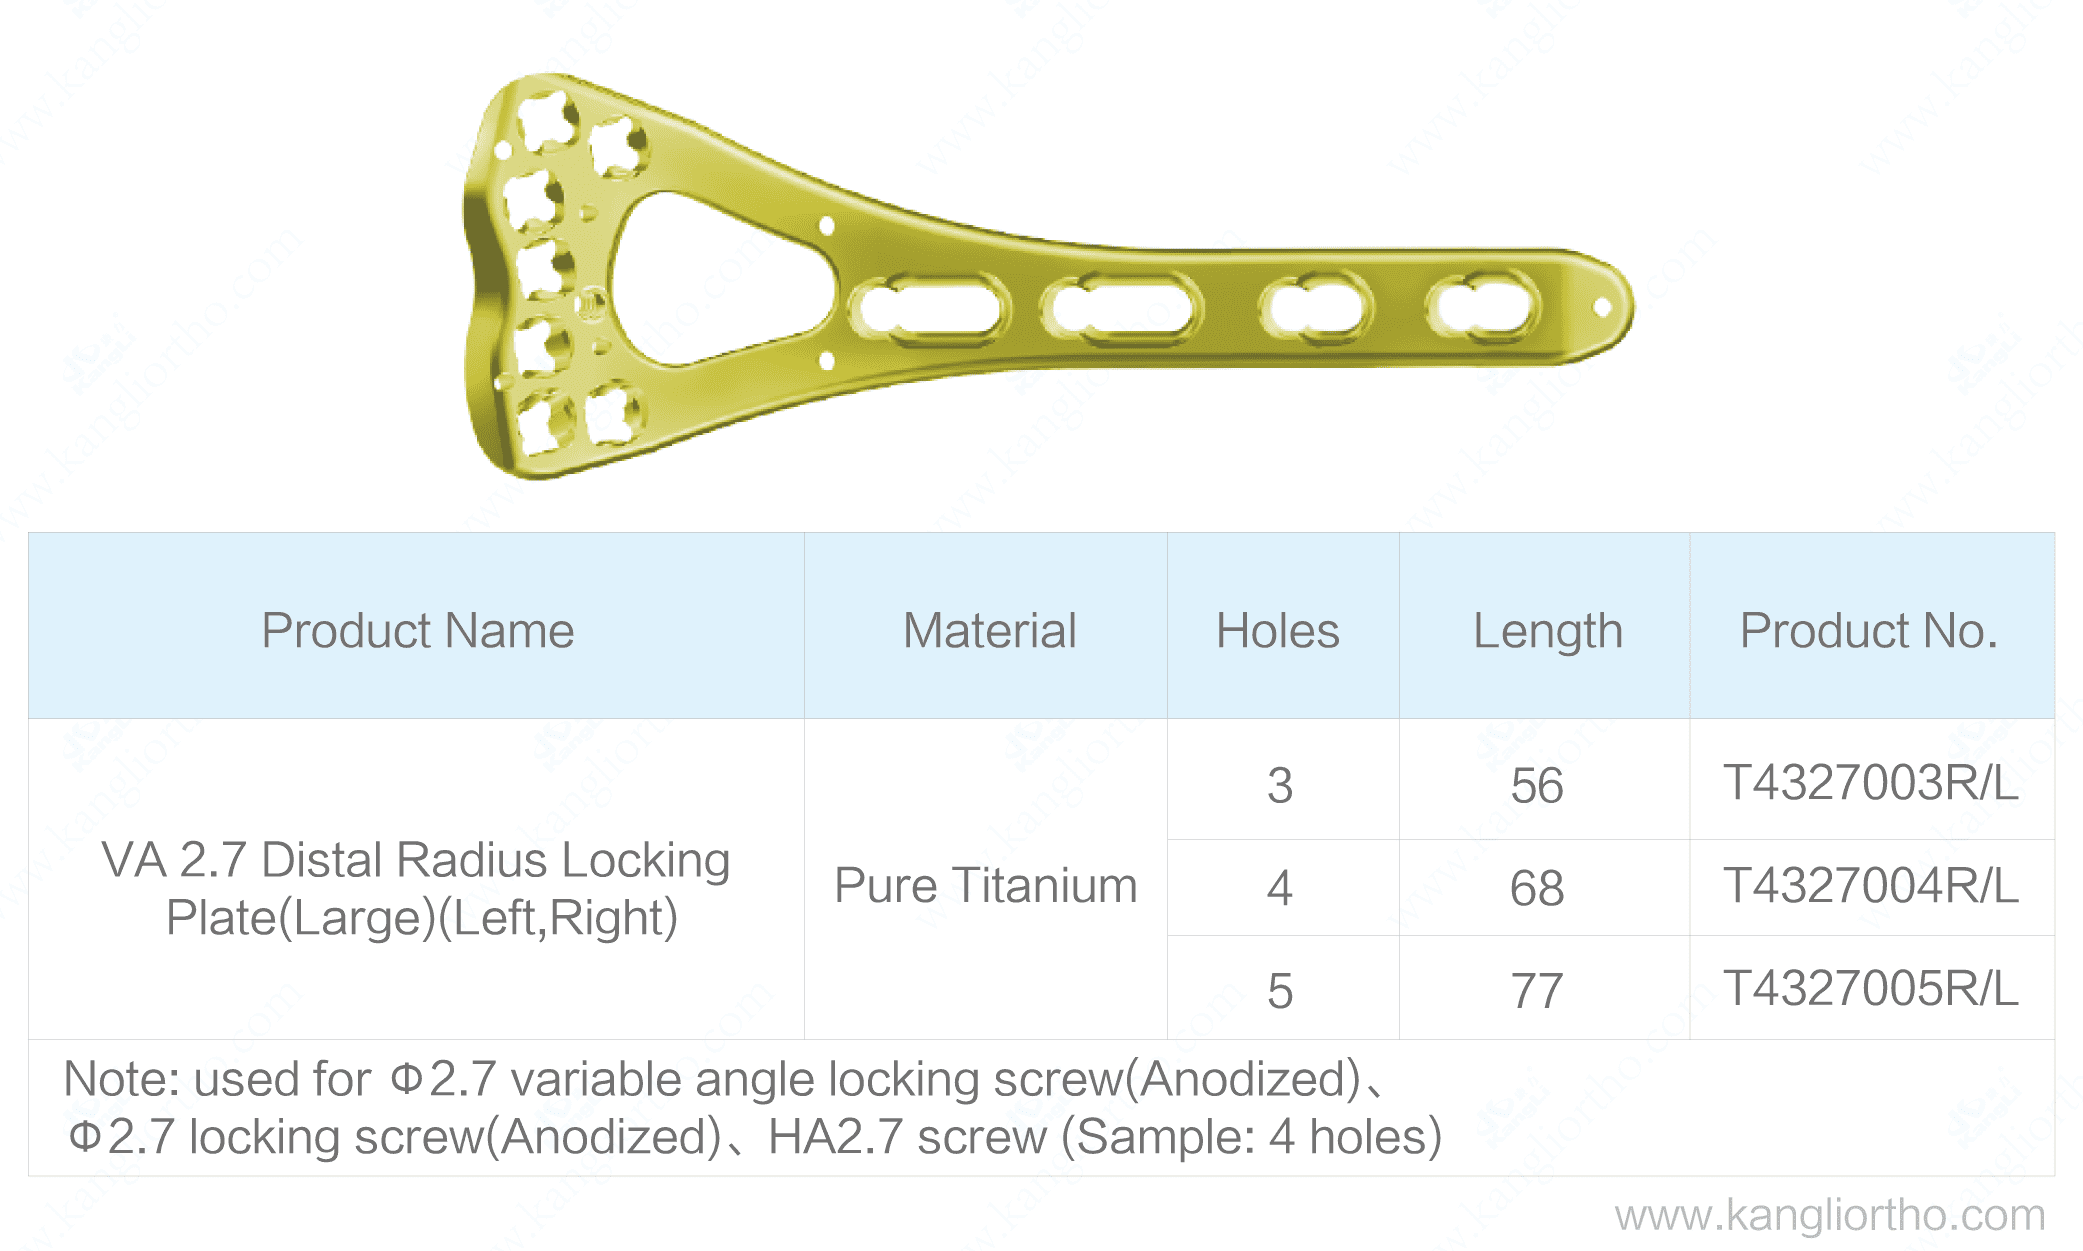 va-2-7-distal-radius-locking-plate-large-specifications